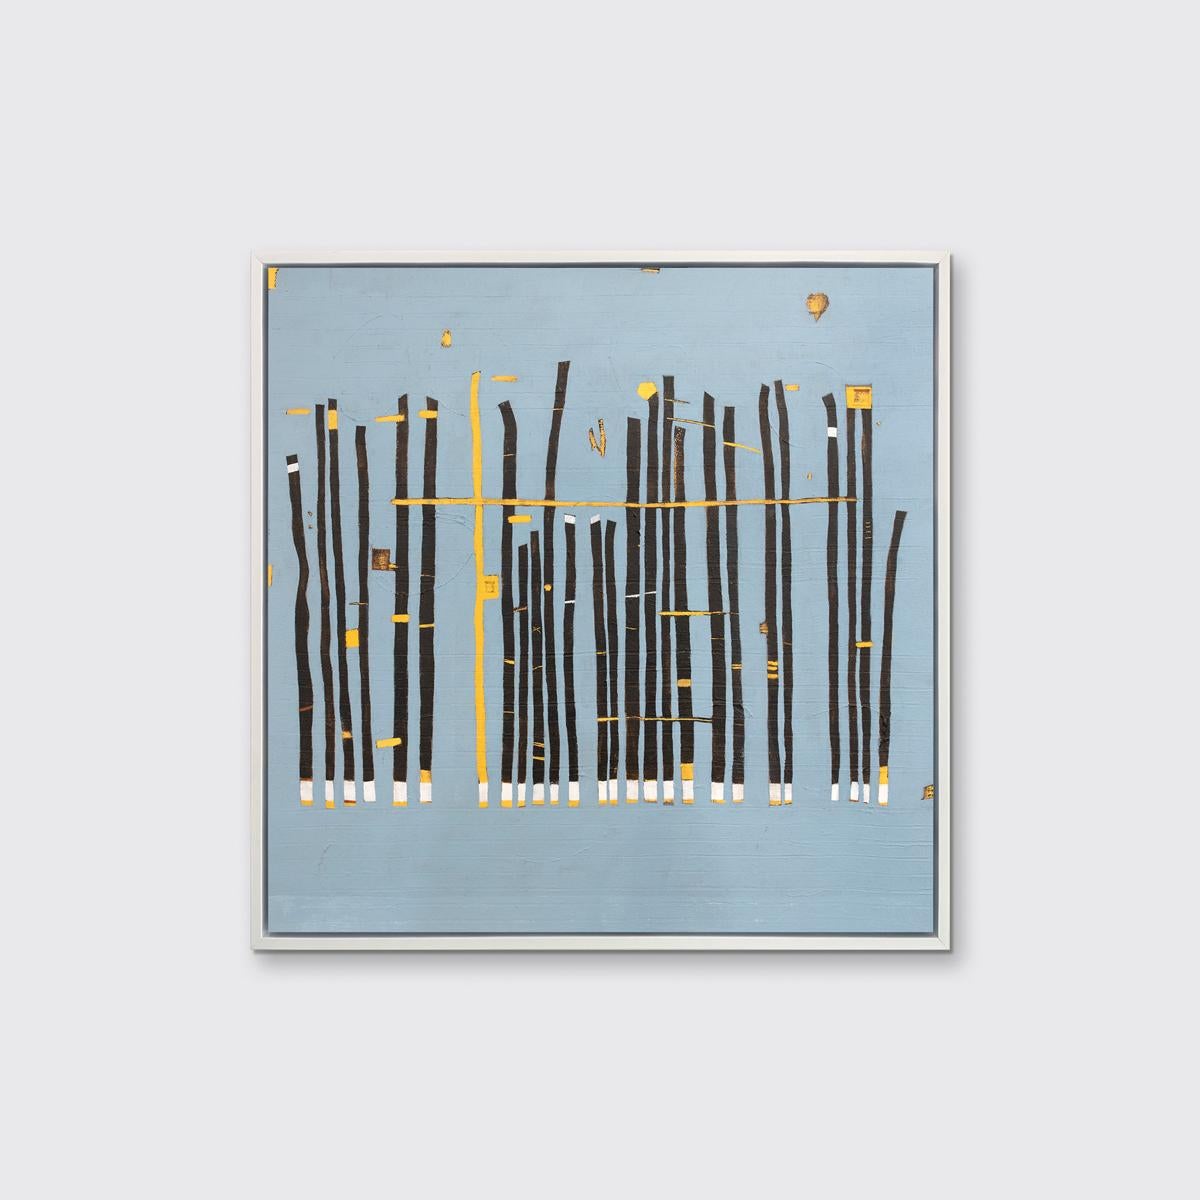 Dieser abstrakte Giclée-Druck in limitierter Auflage von Sofie Swann zeigt dünne, dunkelblaue, parallele Rechtecke von unterschiedlicher Höhe, die jeweils einen weißen und gelben Boden haben. In der Mitte ist eine einzelne gelbe Linie abgebildet,